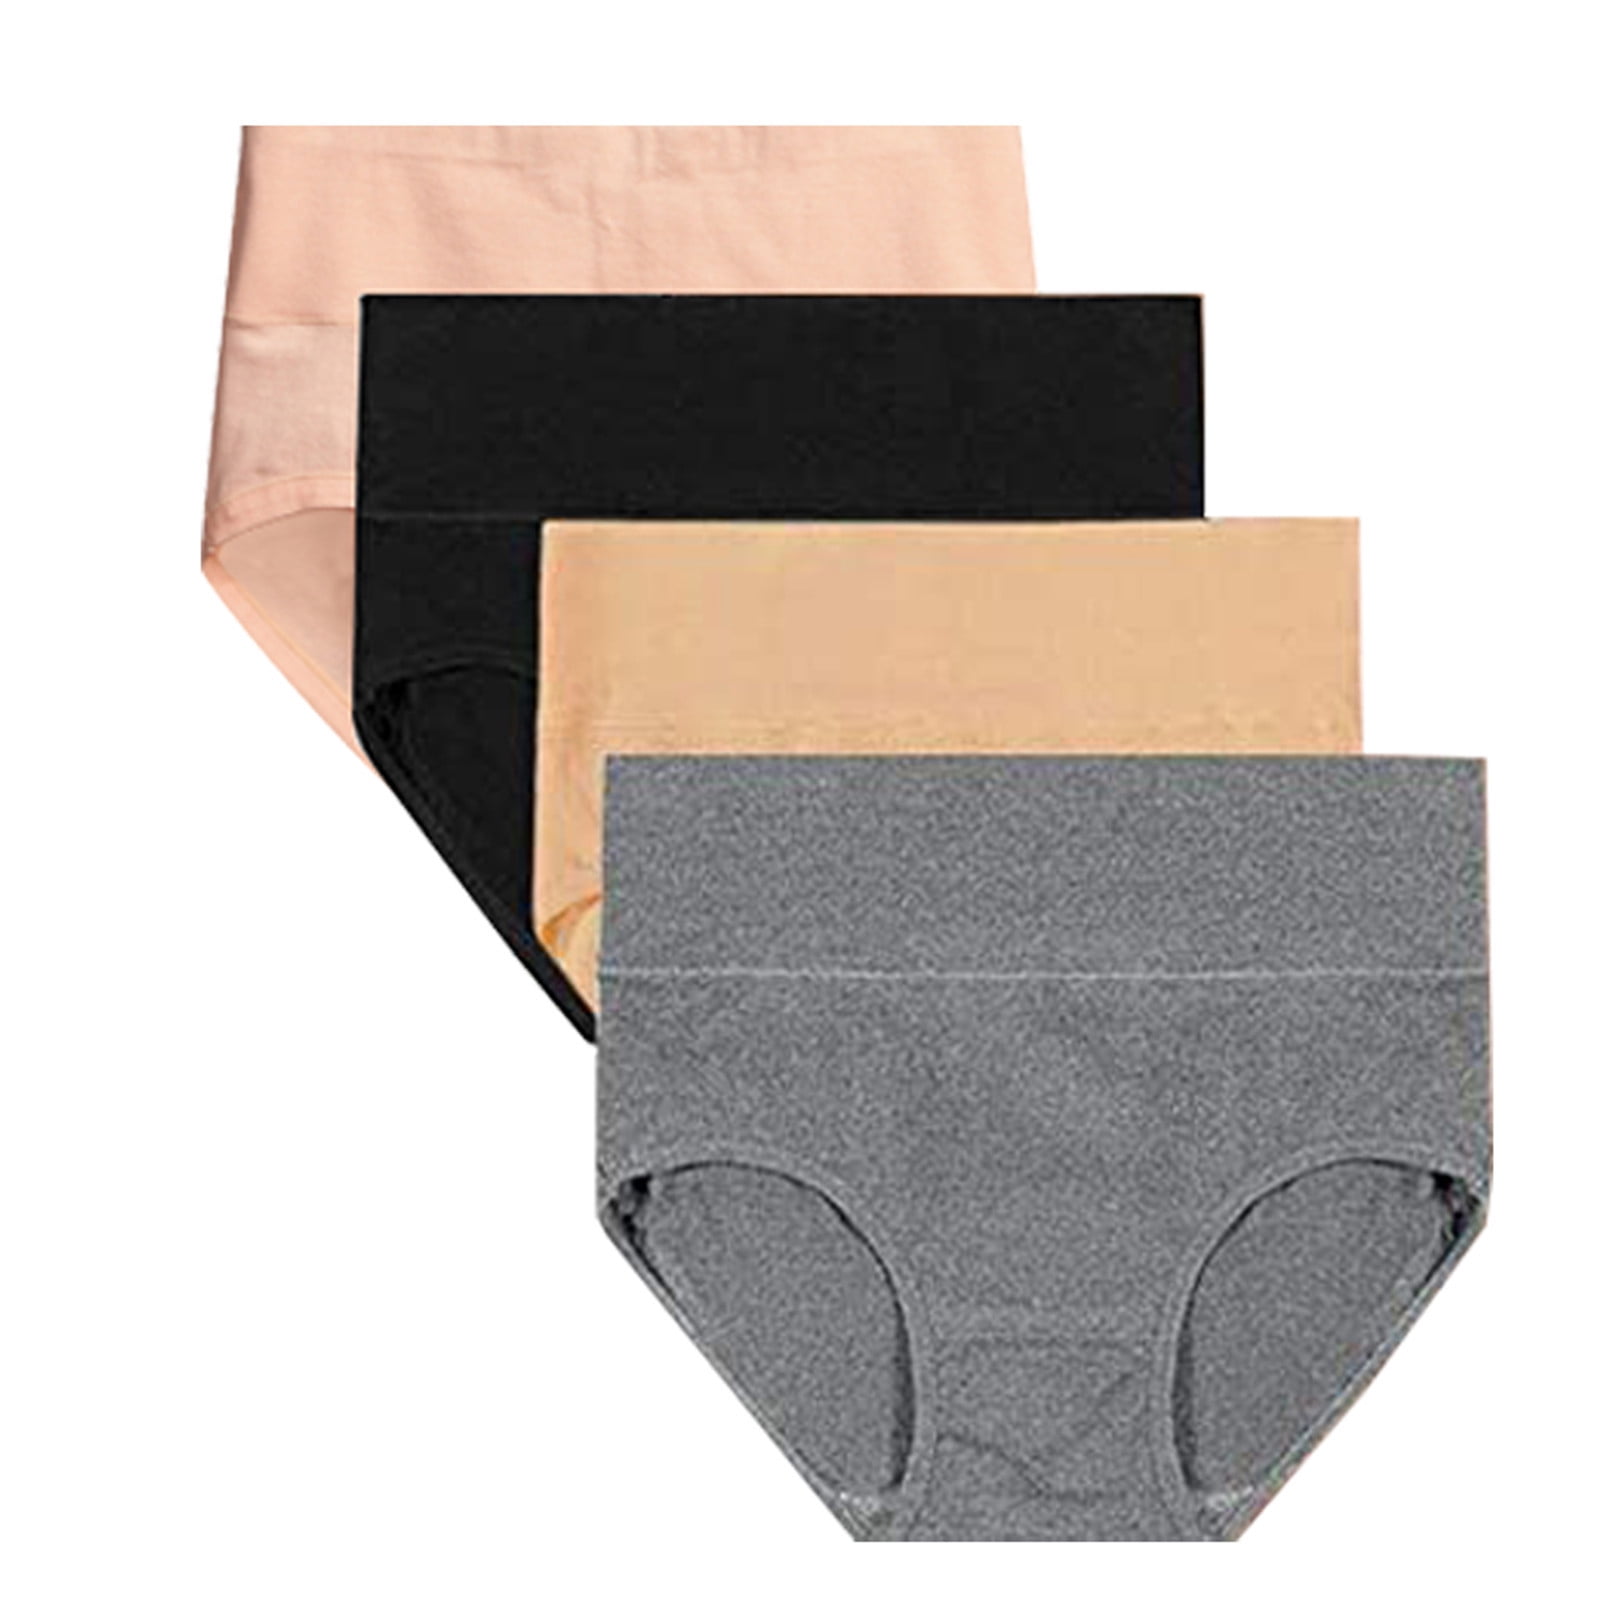 DNDKILG Women's Postpartum High Waisted Underwear Full Coverage